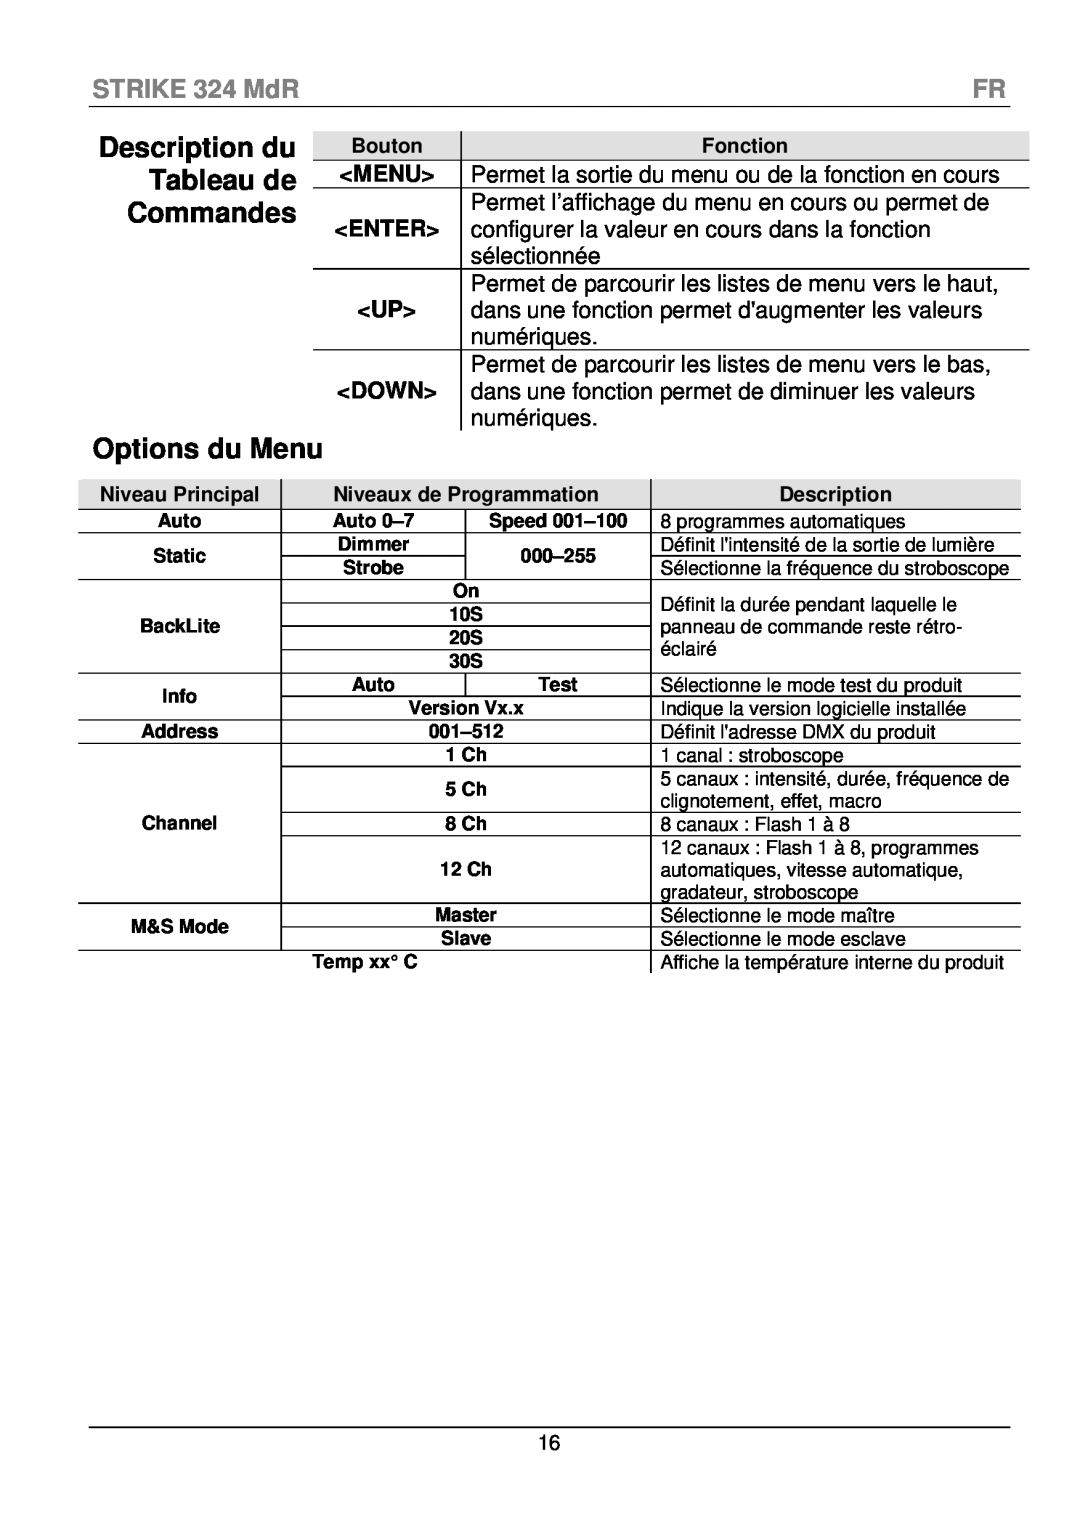 Chauvet manual Description du, Tableau de, Commandes, Options du Menu, STRIKE 324 MdR 